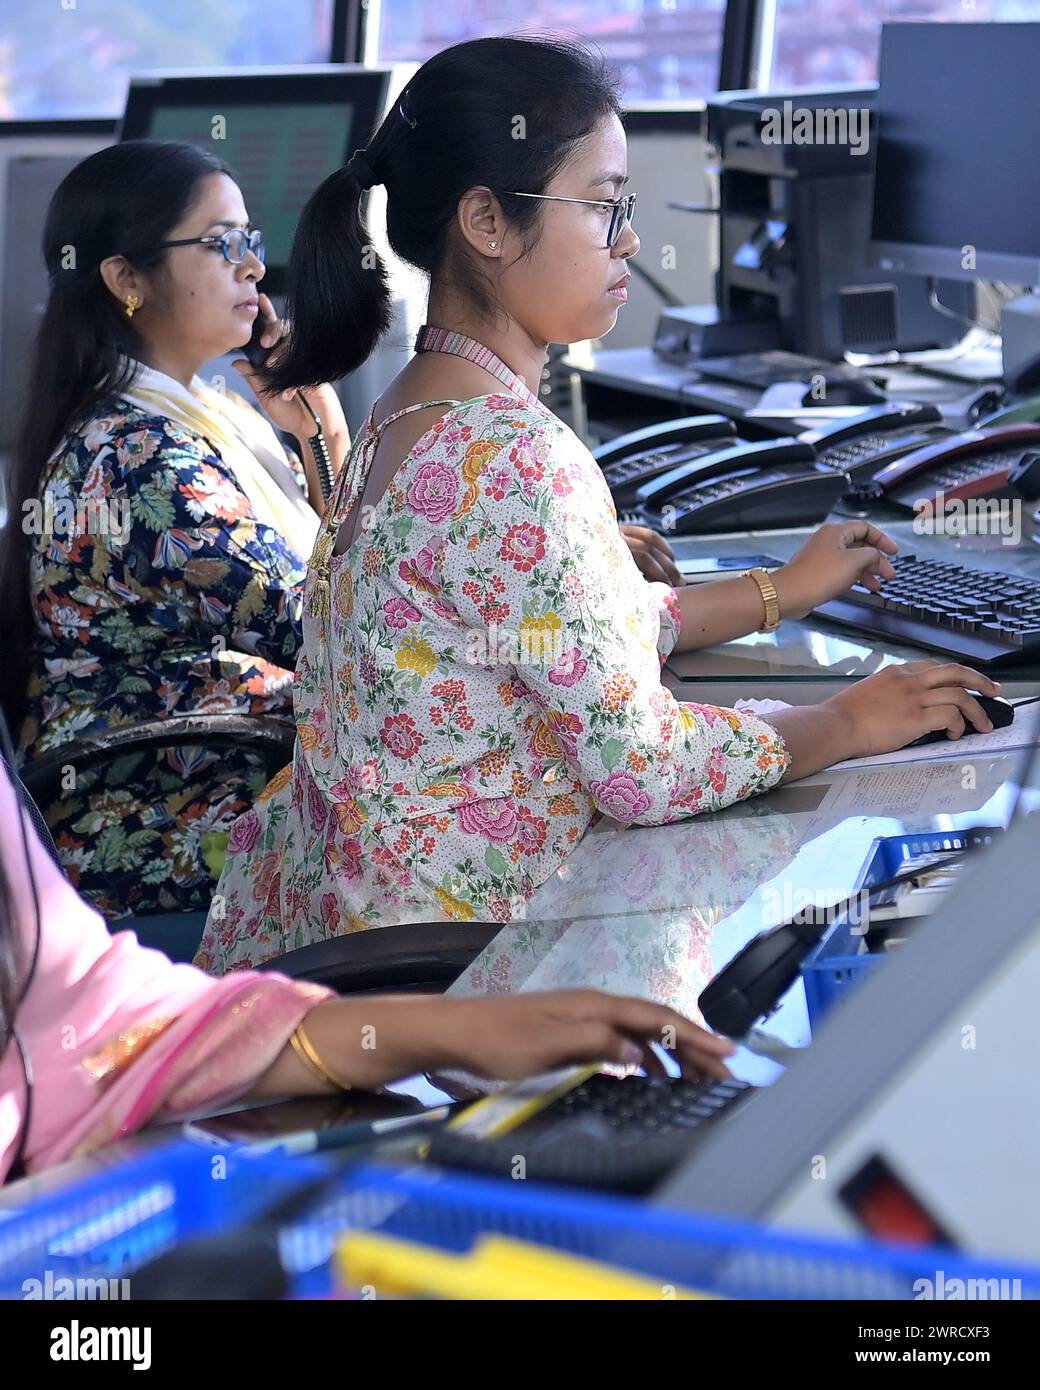 Le controllori del traffico femminile, Bipasha Hrangkhawl, Disha Chandra e Chaya, si occupano della gestione del traffico presso la torre ATCT dell'aeroporto di Agartala per celebrare la giornata internazionale della donna. Tripura, India. Foto Stock